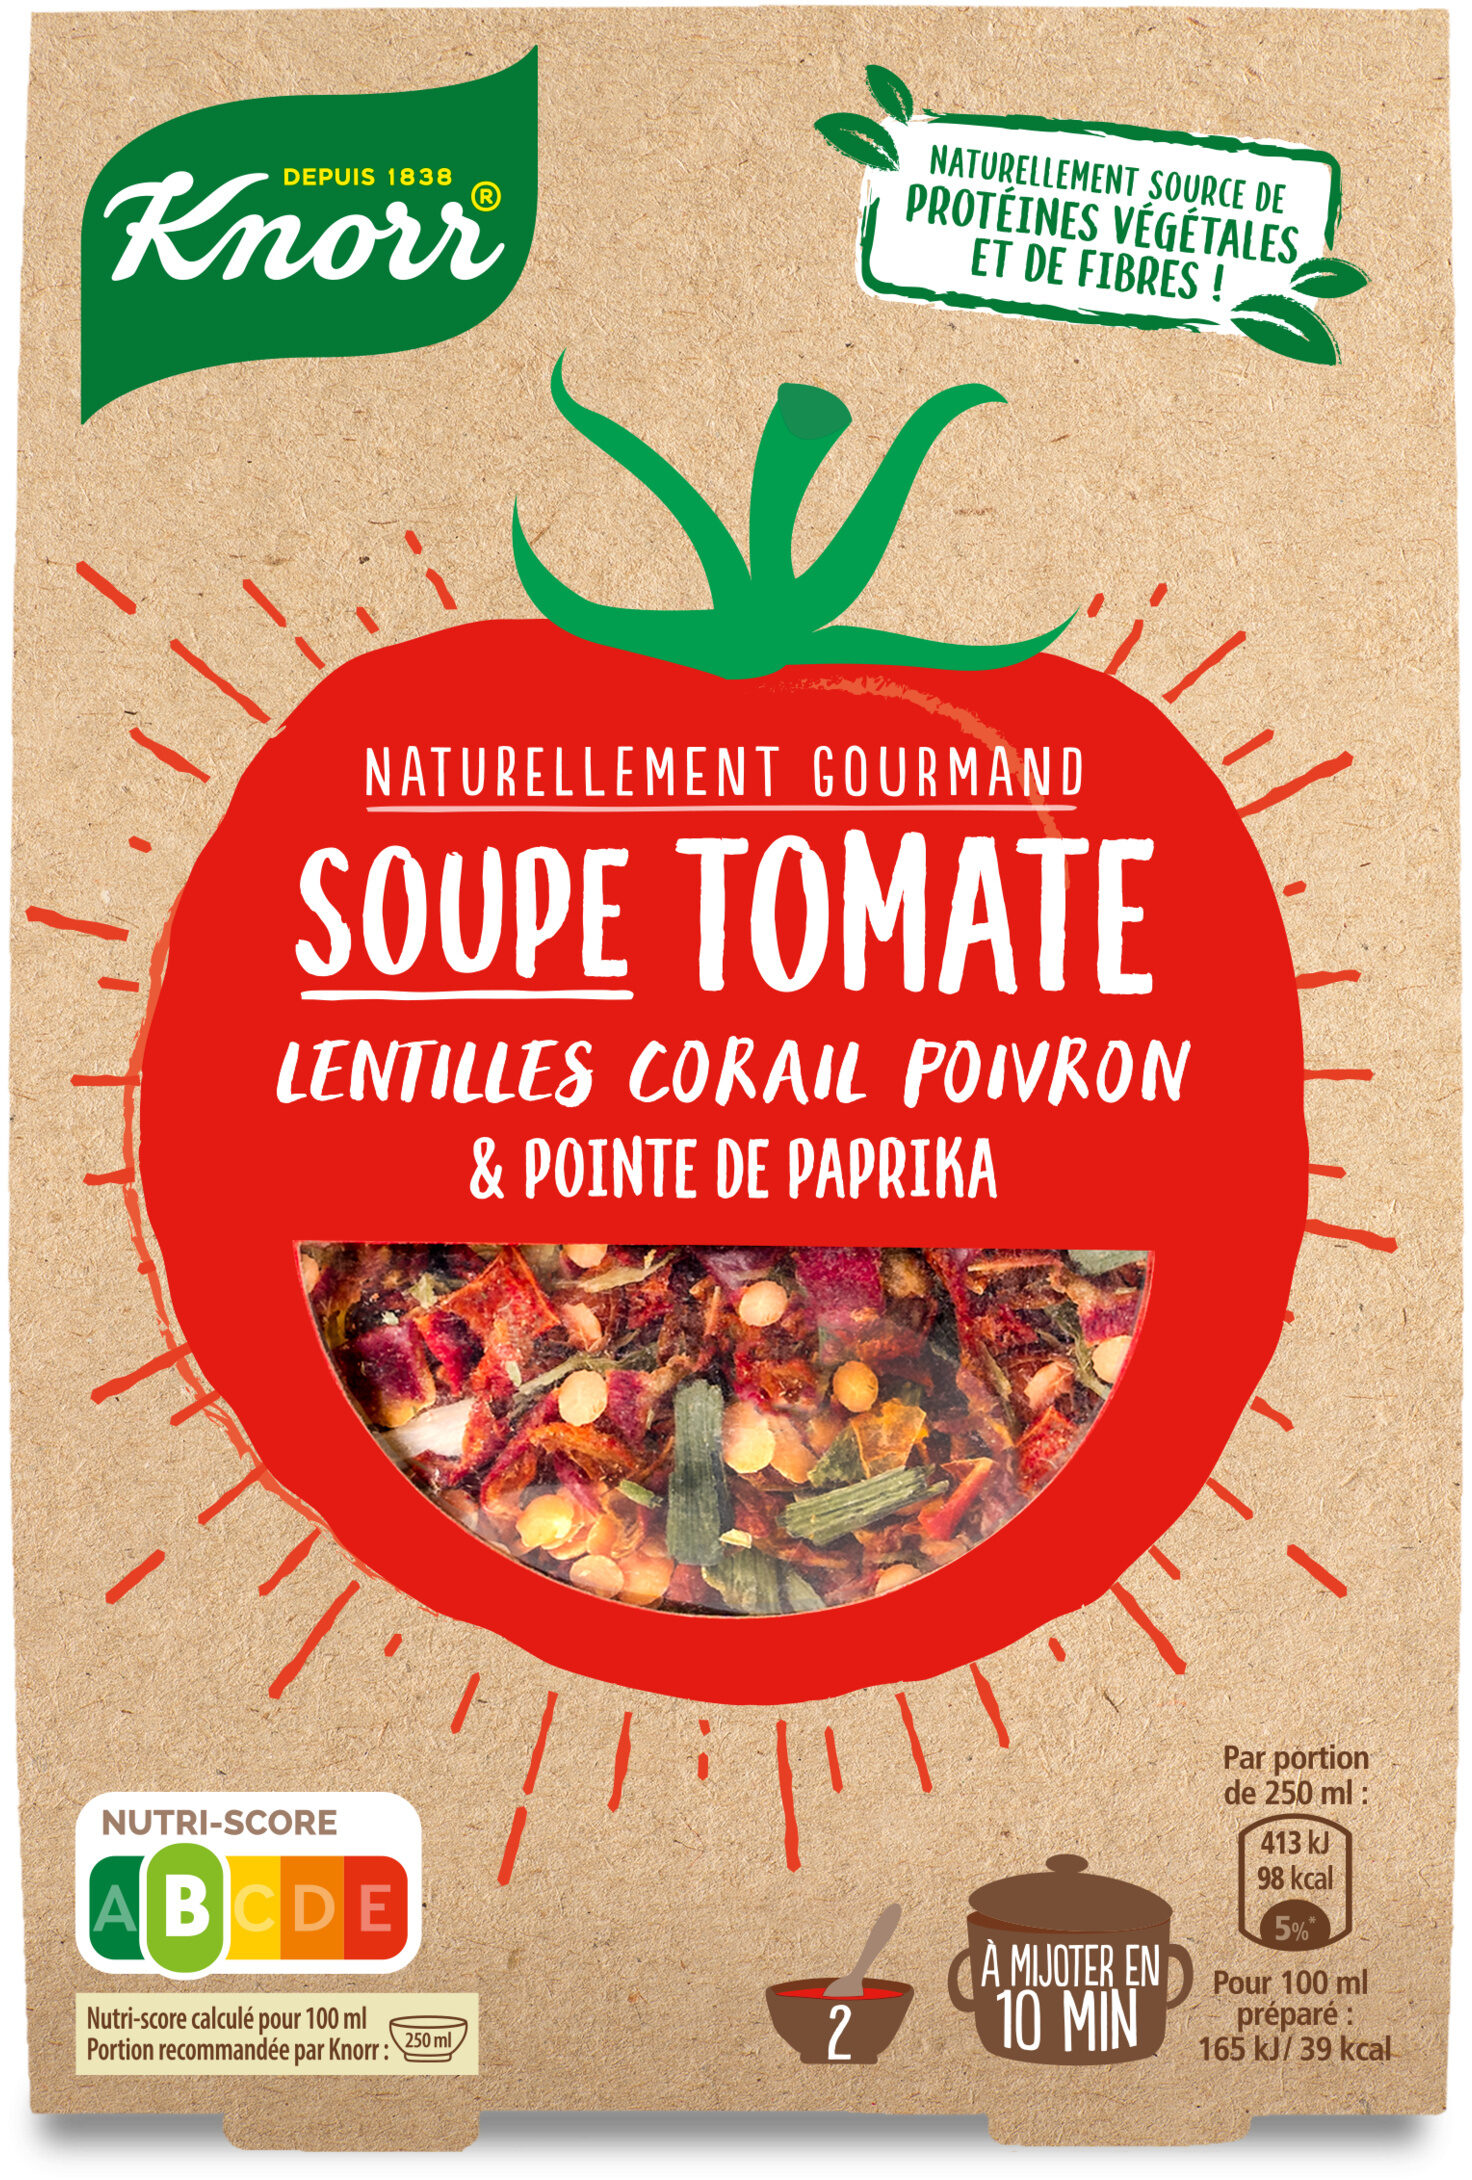 Knorr Naturellement Gourmand Soupe Déshydratée Tomate et lentilles corail - Product - fr